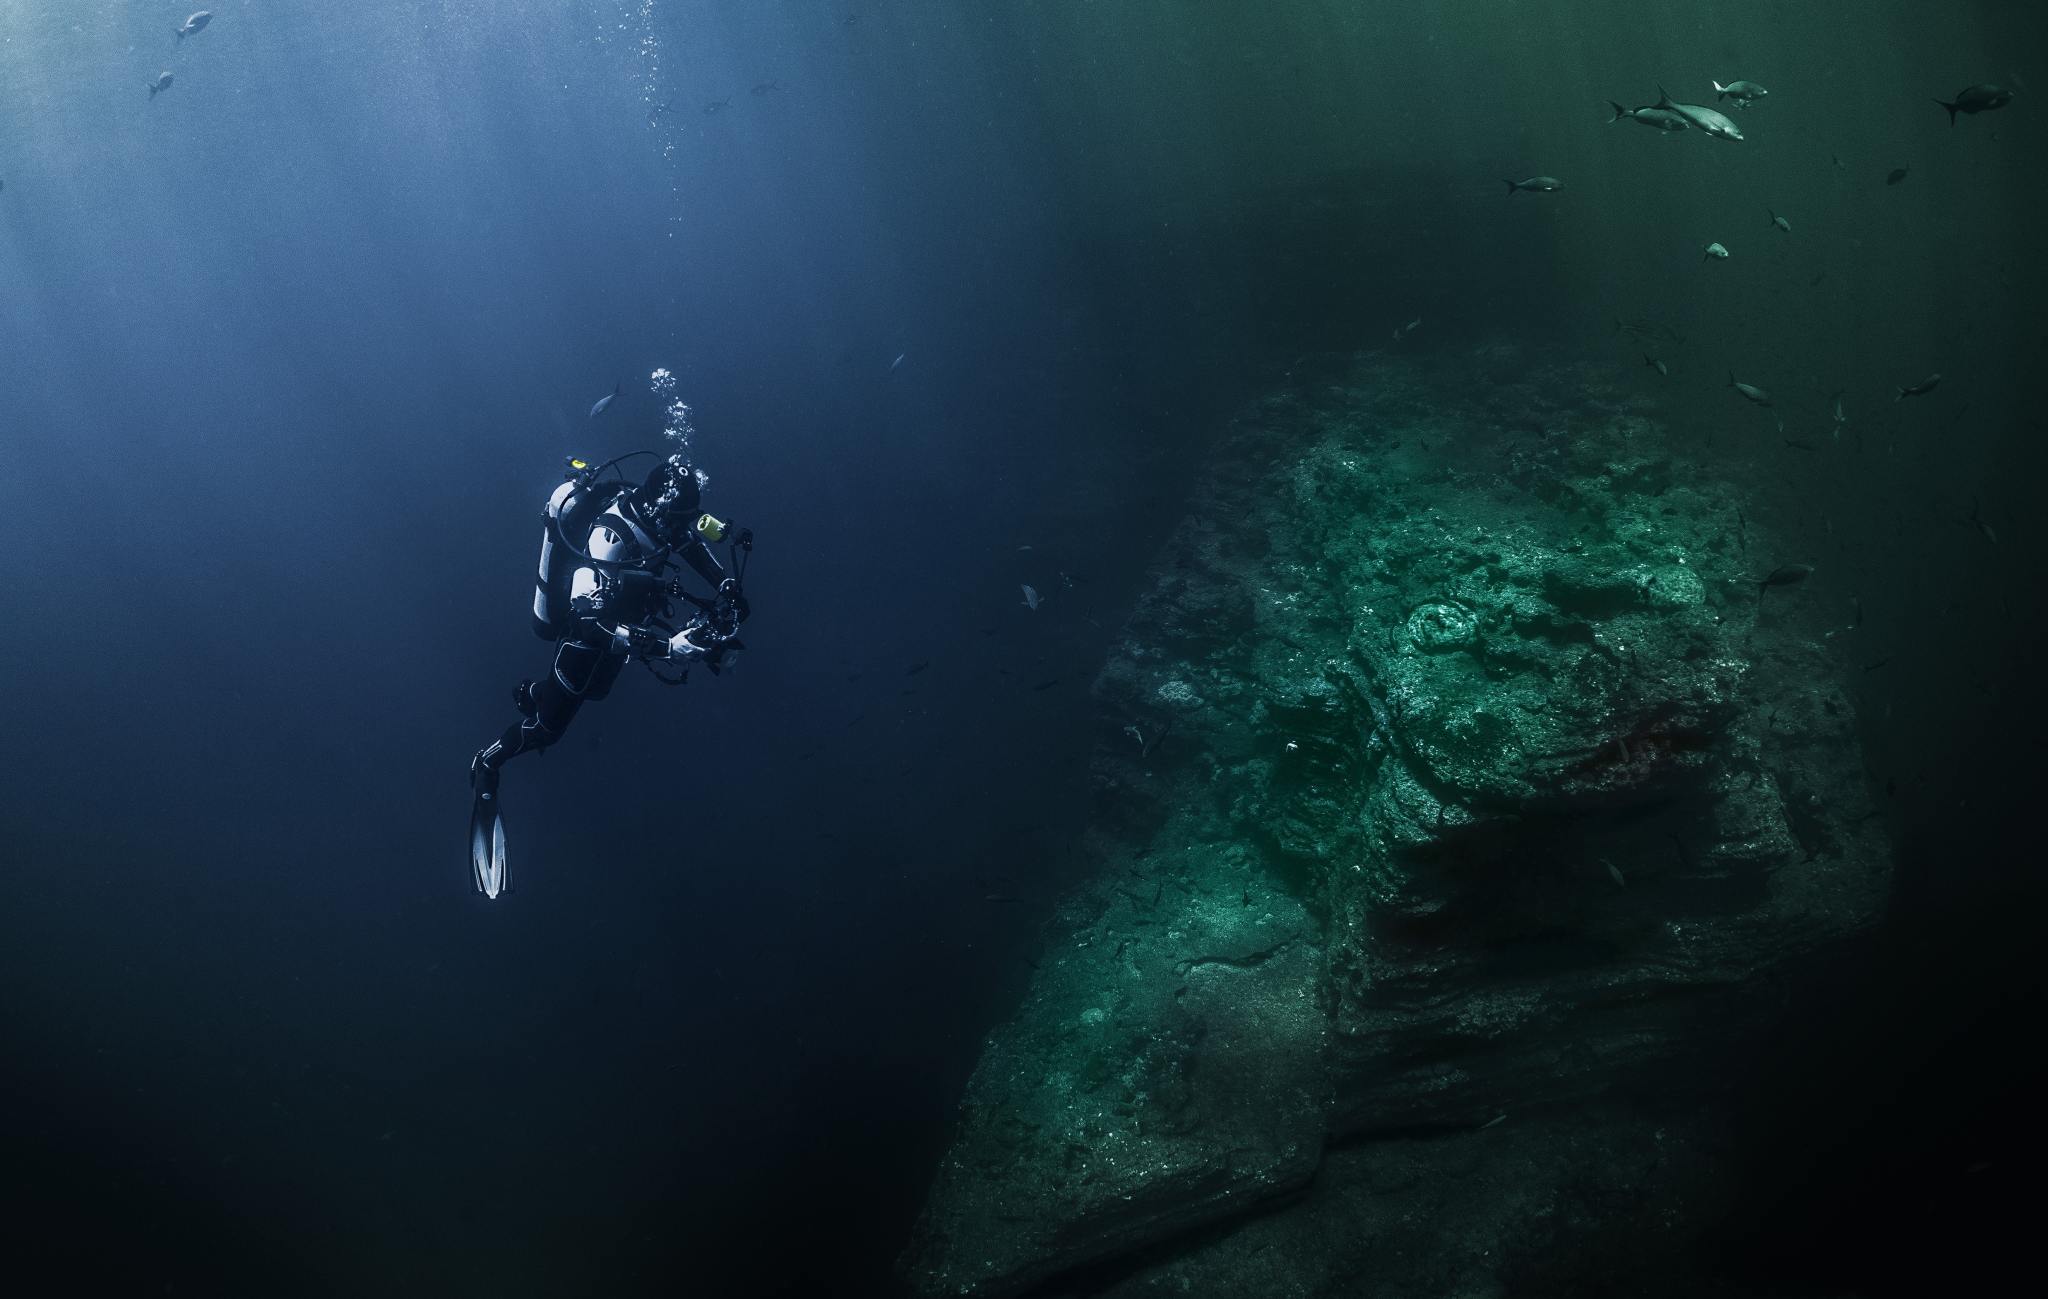 Deep sea diver in the ocean.